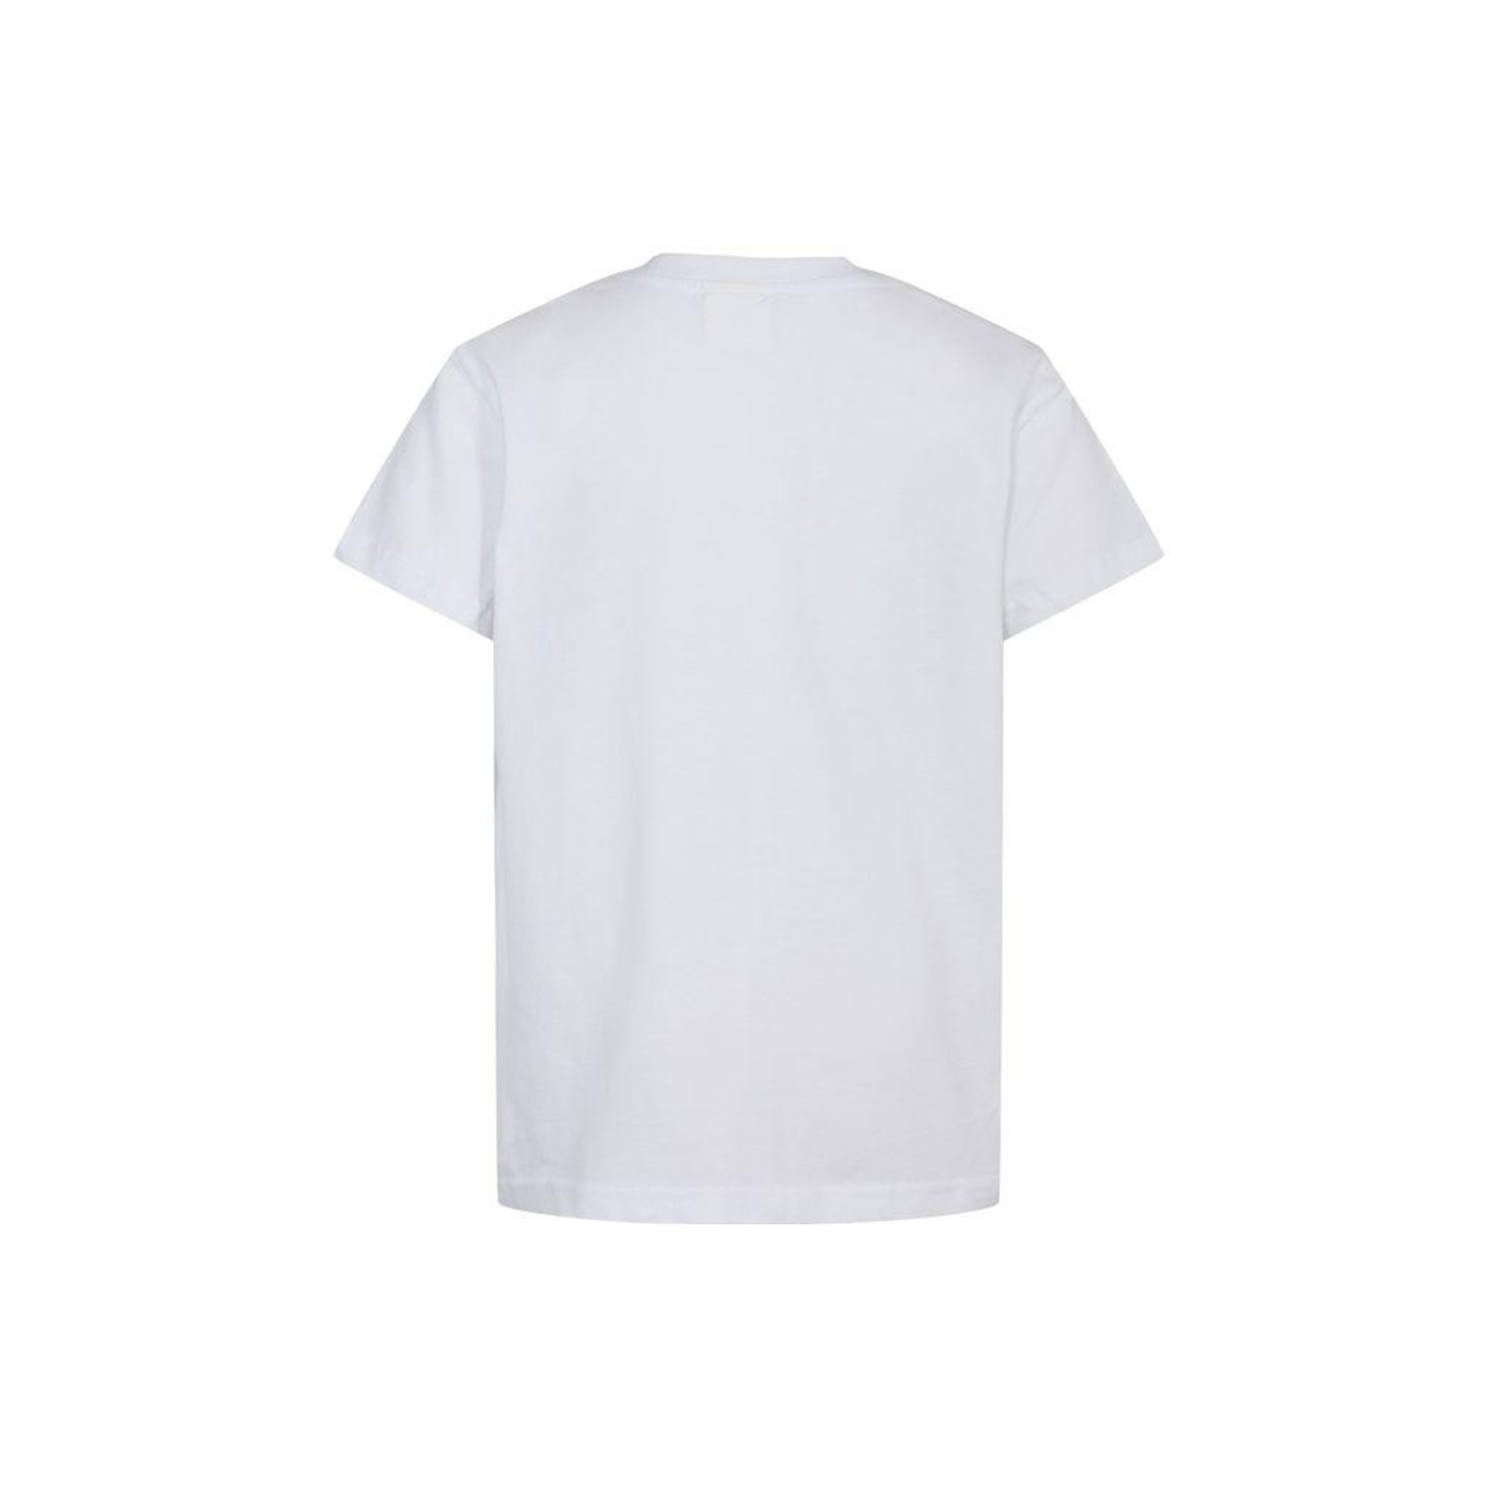 Sofie Schnoor T-shirt wit